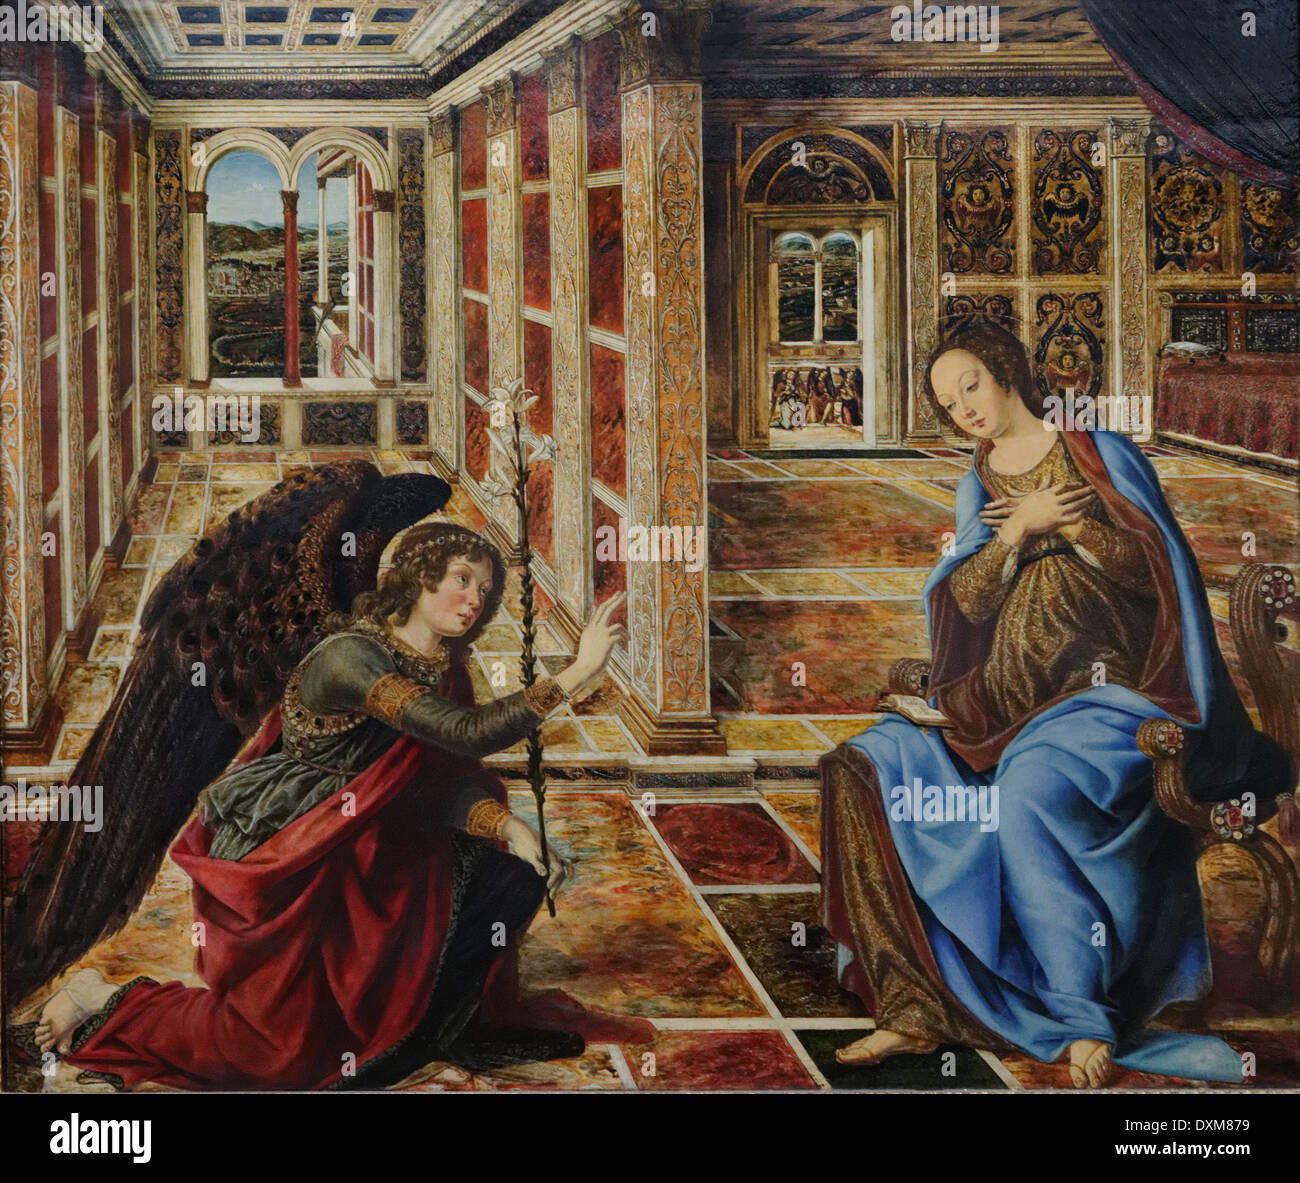 Piero del Pollaiuolo - l'Annunciazione e Maria - XV secolo - Scuola di Italiano - Gemäldegalerie - Berlino Foto Stock